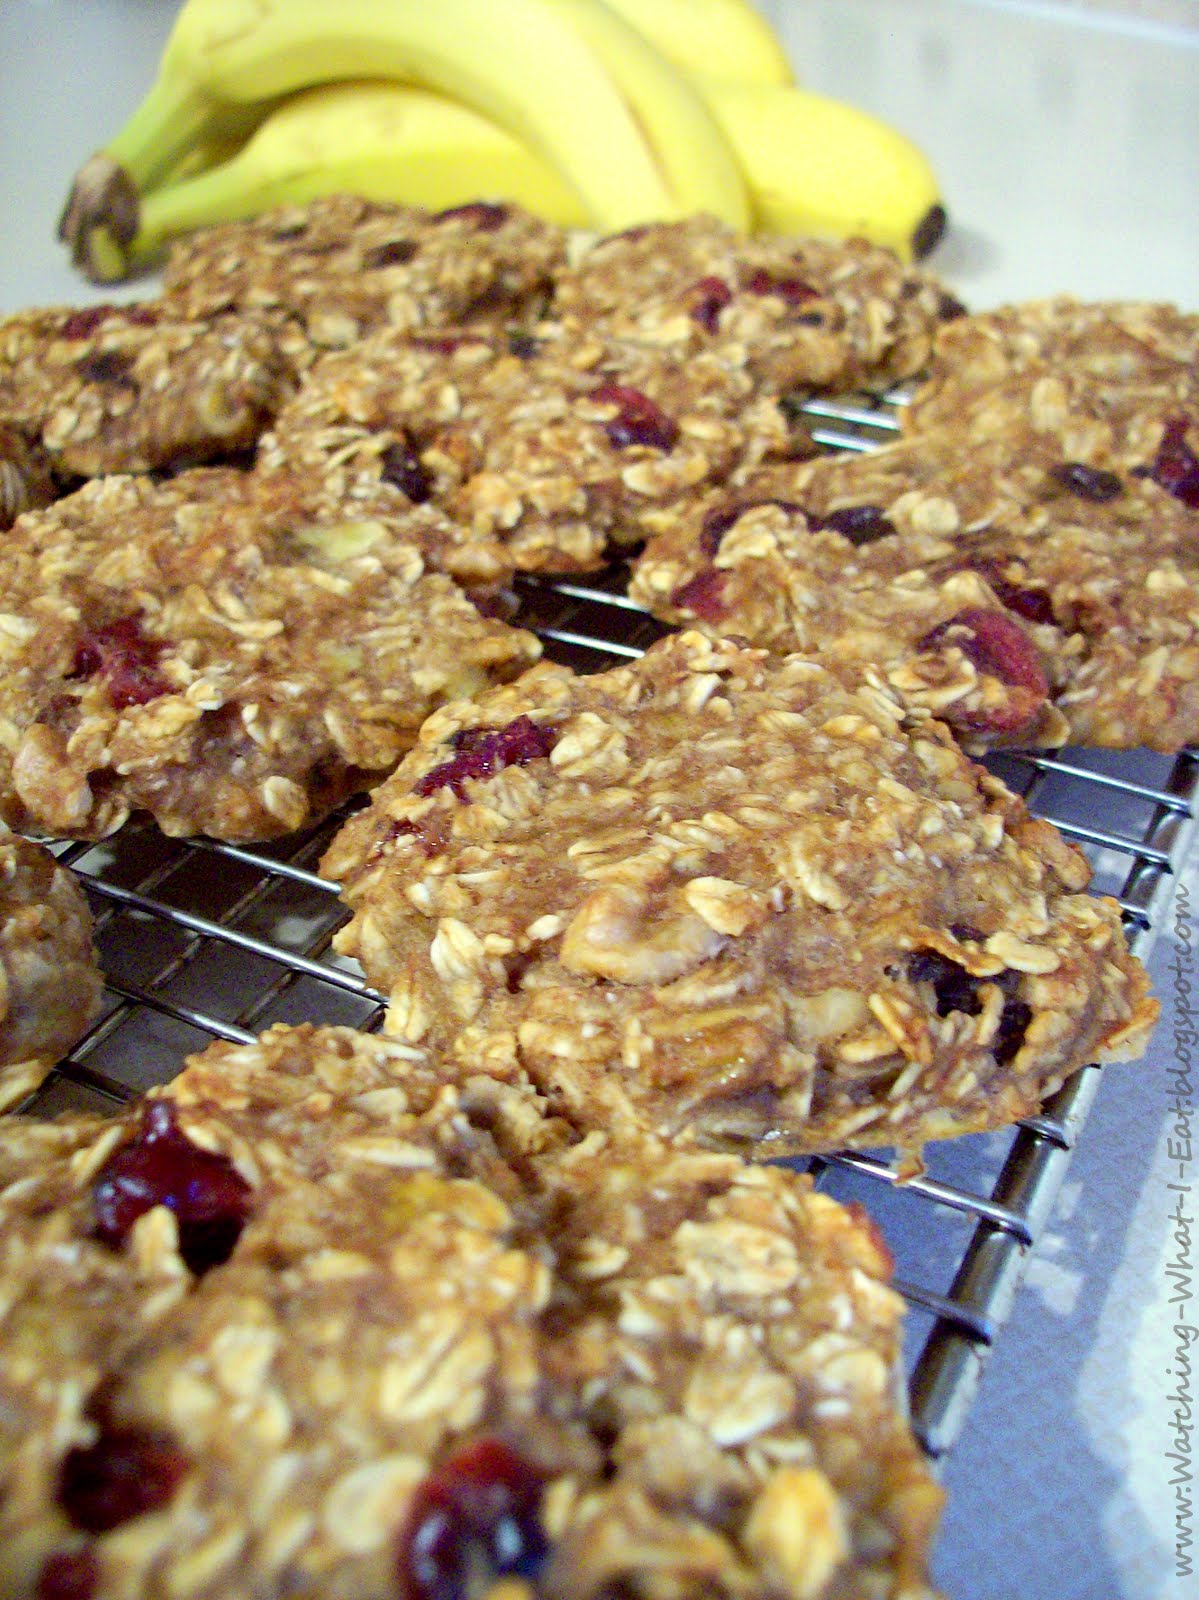 http://3.bp.blogspot.com/-54L2lE8geyY/T4pAW0AqdpI/AAAAAAAAB8A/J9JoAh6RjJU/s1600/breakfast%2Bcookies.JPG